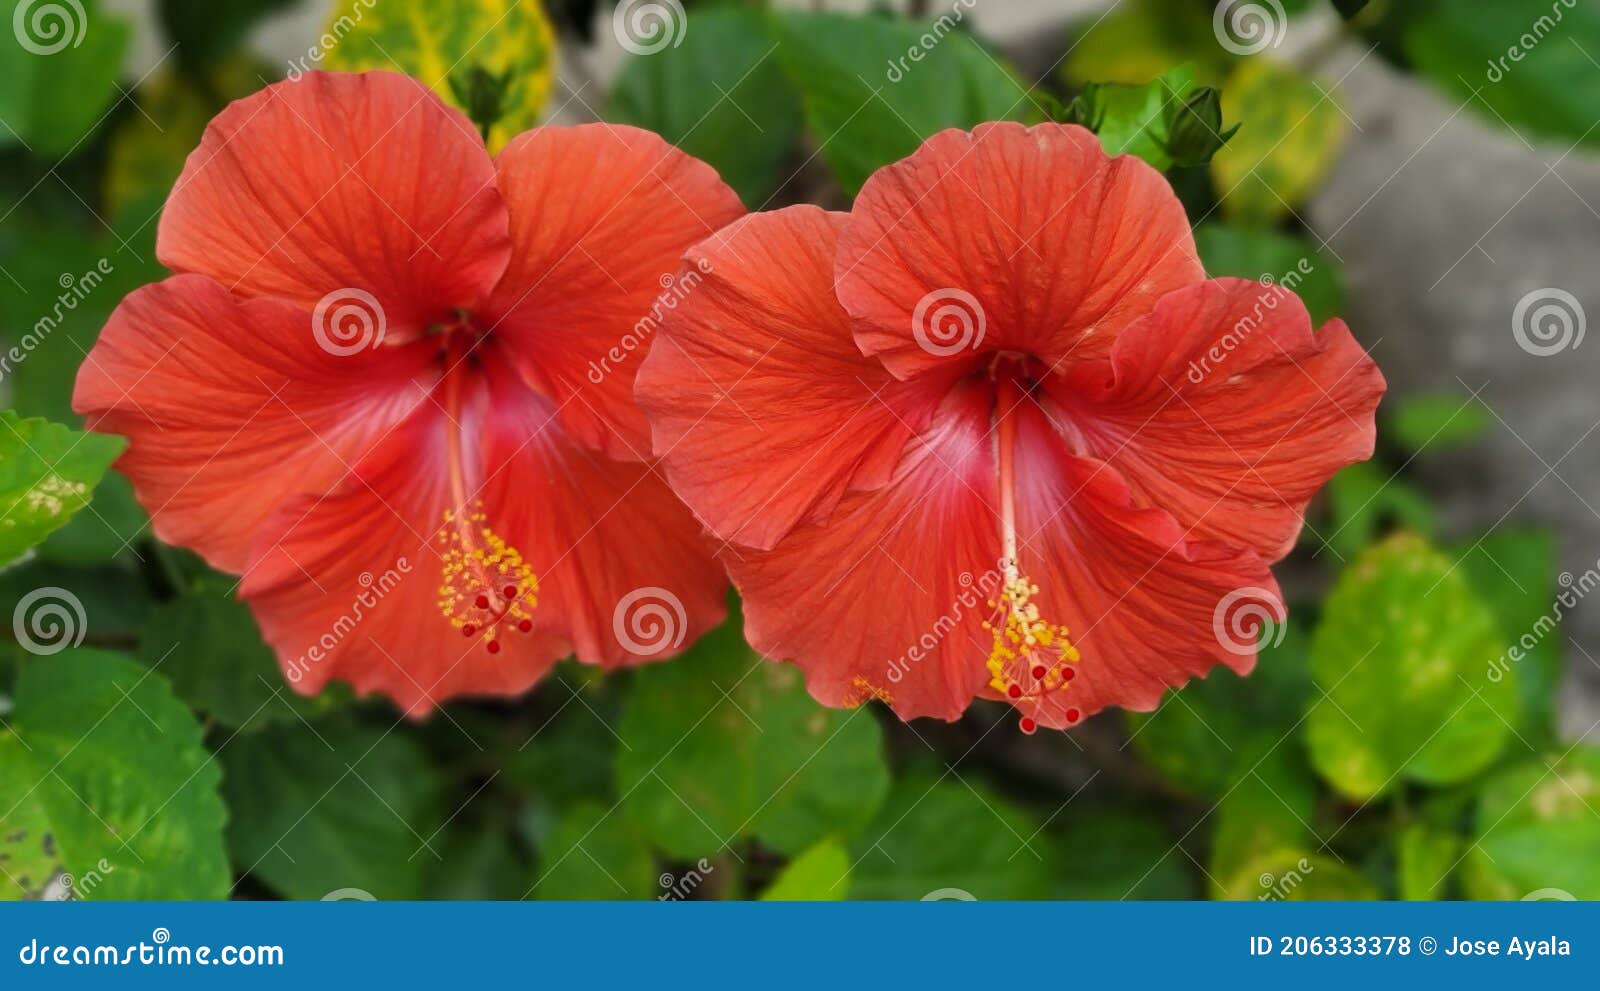 doble red amapola beautiful flower